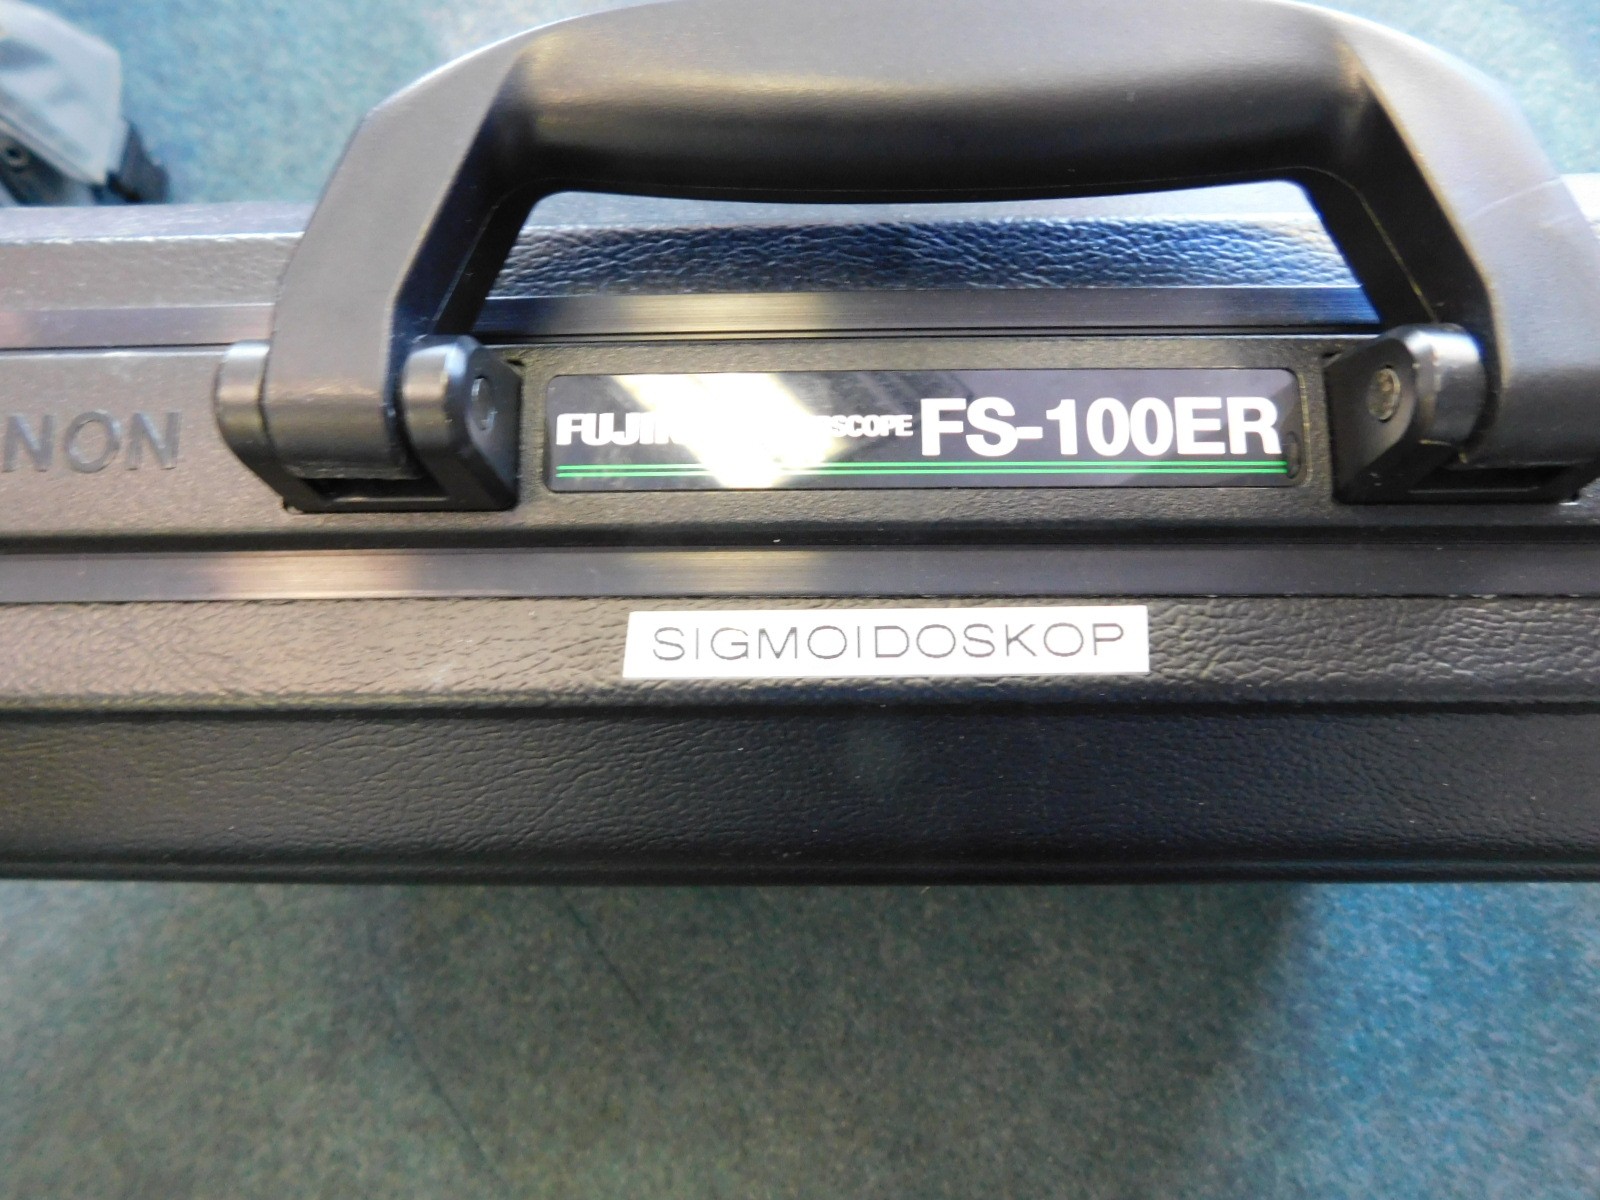 fujinon-fs-100er-sigmoidoskop